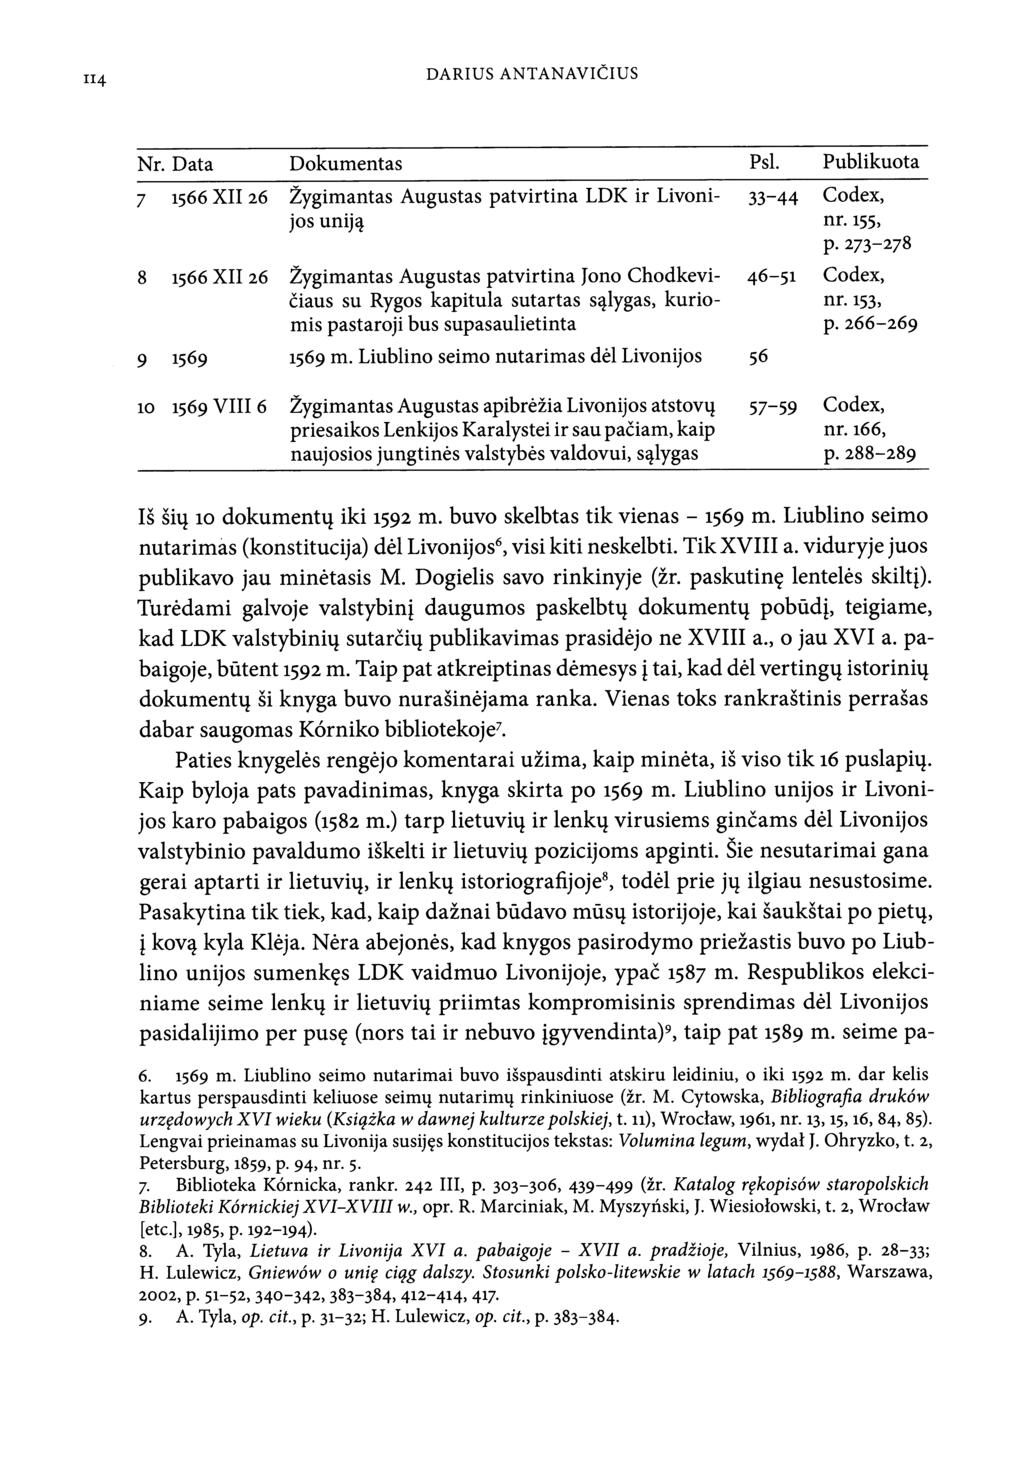 114 DARIUS ANTANAVICIUS Nr. Data Dokumentas Psl. Publikuota 7 i566x1126 Zygimantas Augustas patvirtina LDK ir Livoni- 33-44 Codex, jos unij? nr.155, P.